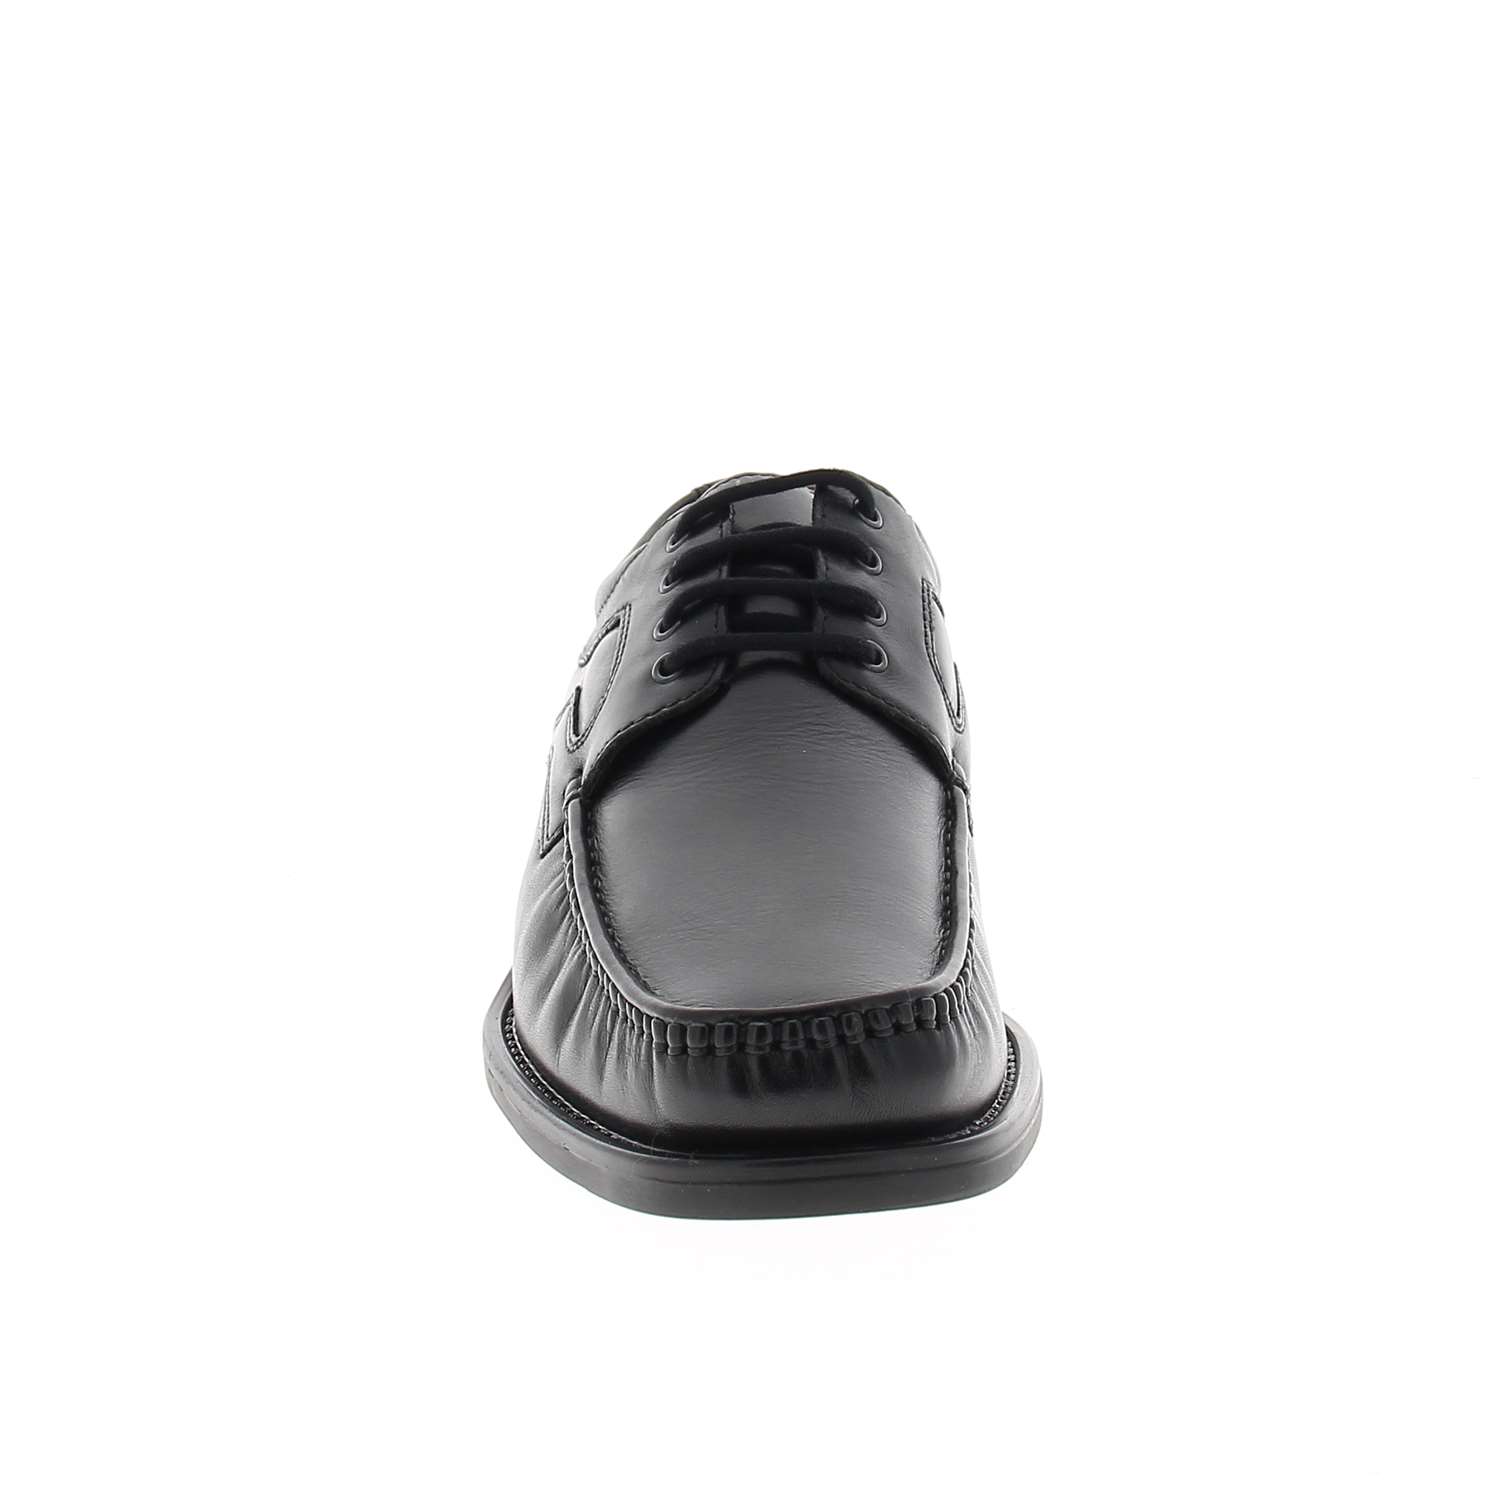 03 - APPLIK - XAPI - Chaussures à lacets - Cuir / textile